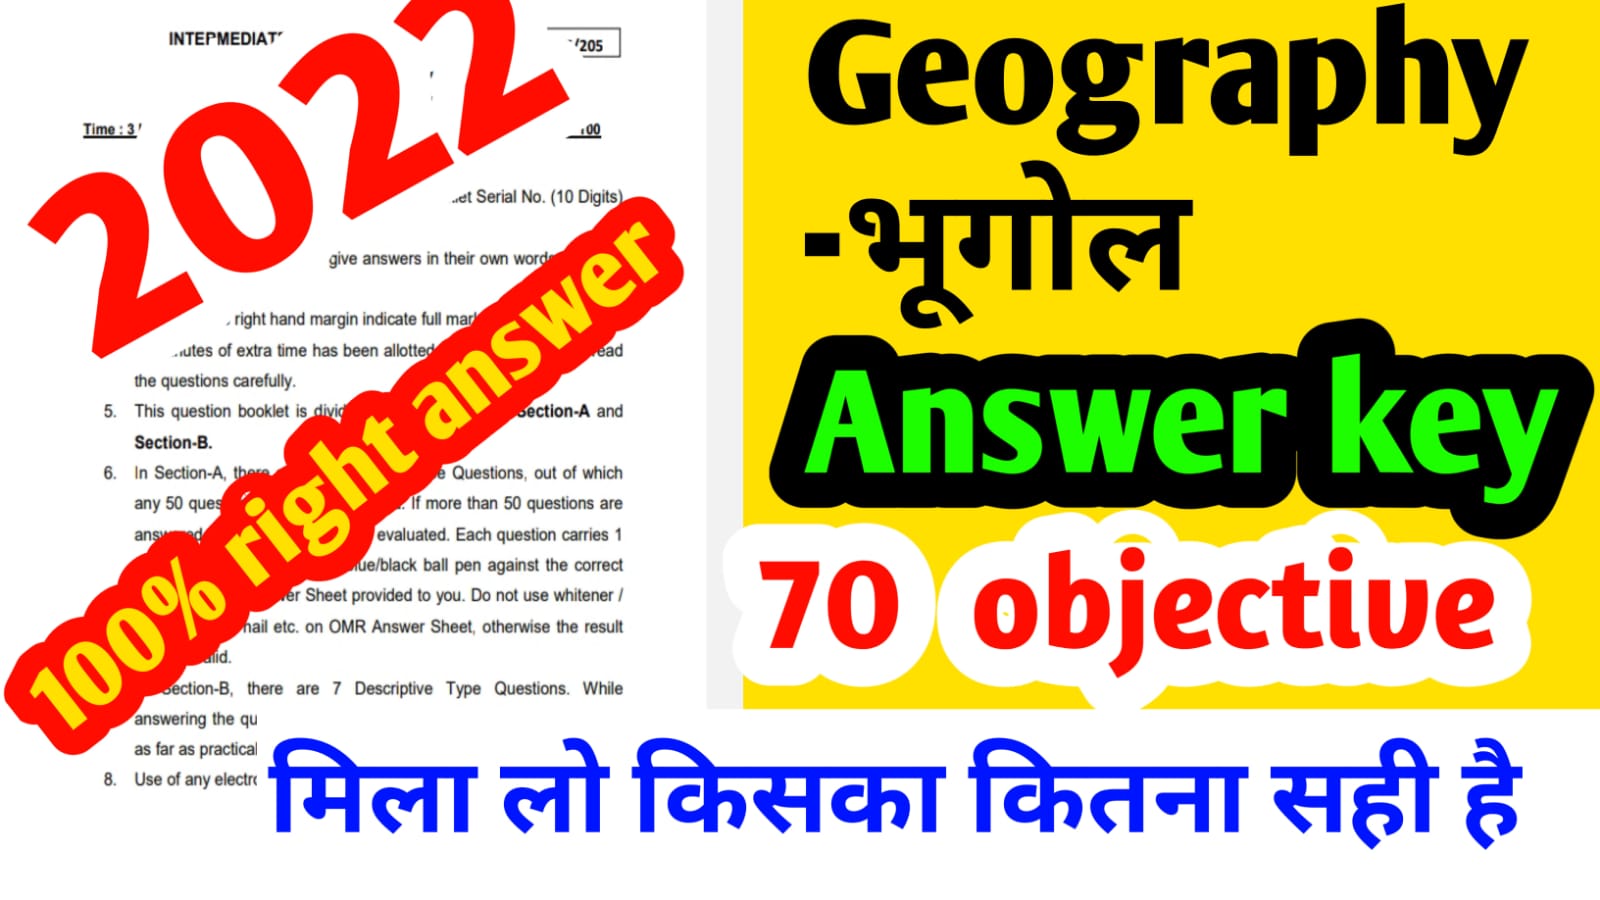 Bihar board Geography answer key